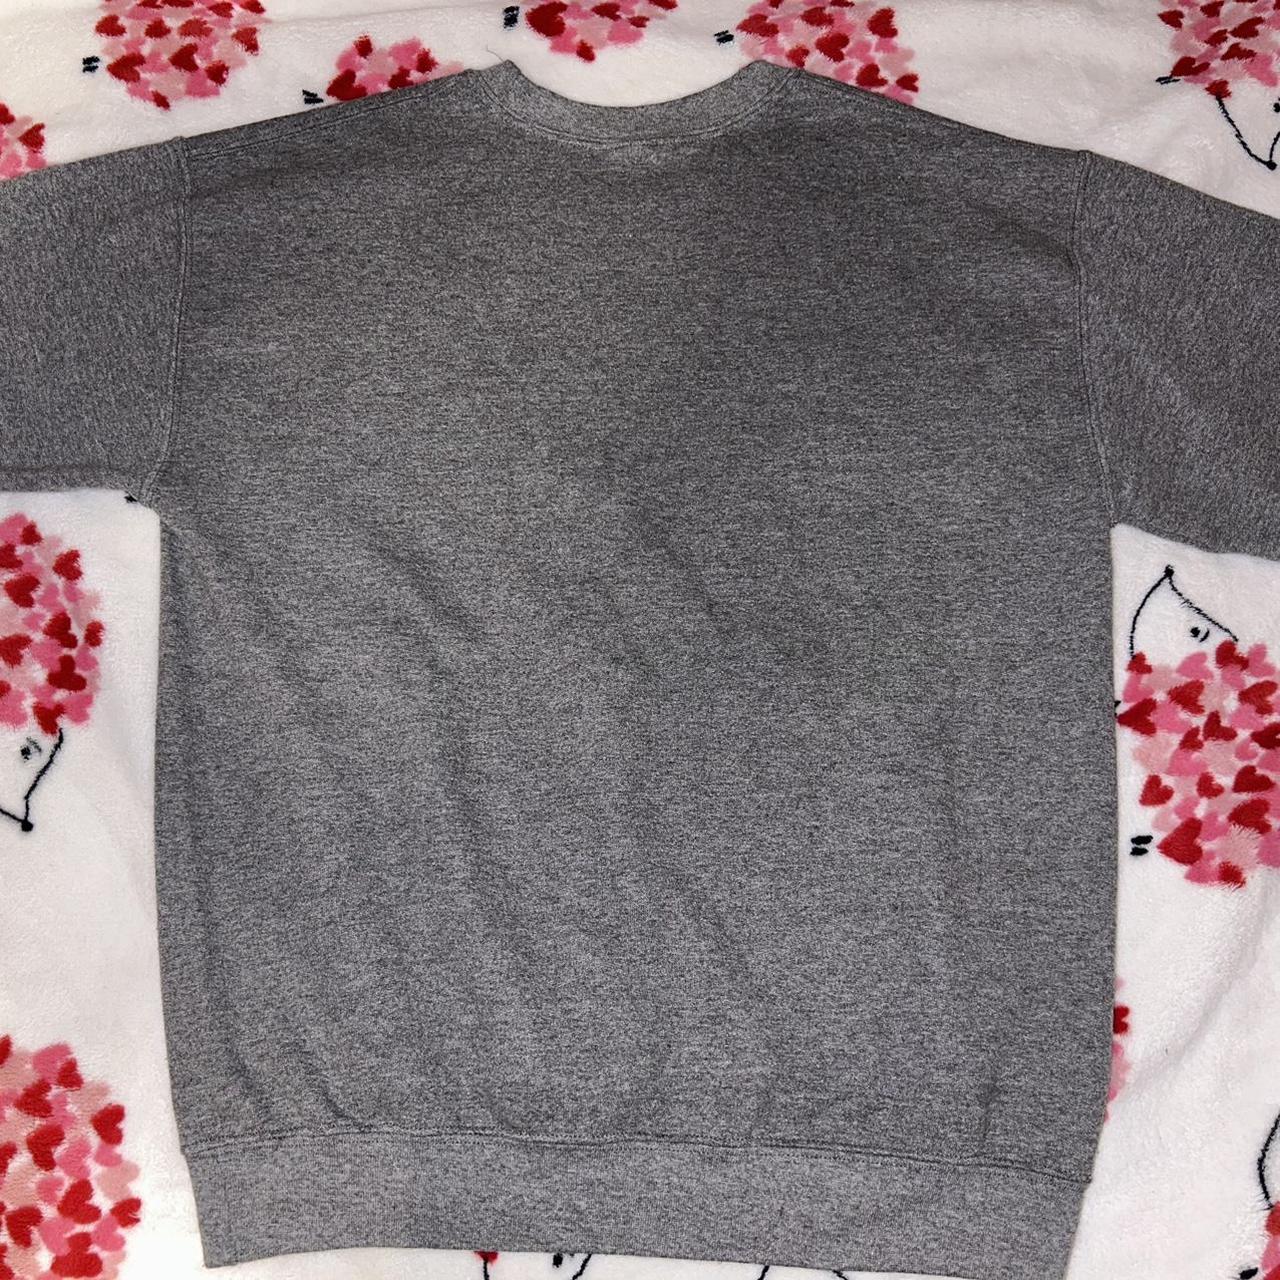 PacSun Men's Grey and Black Sweatshirt | Depop